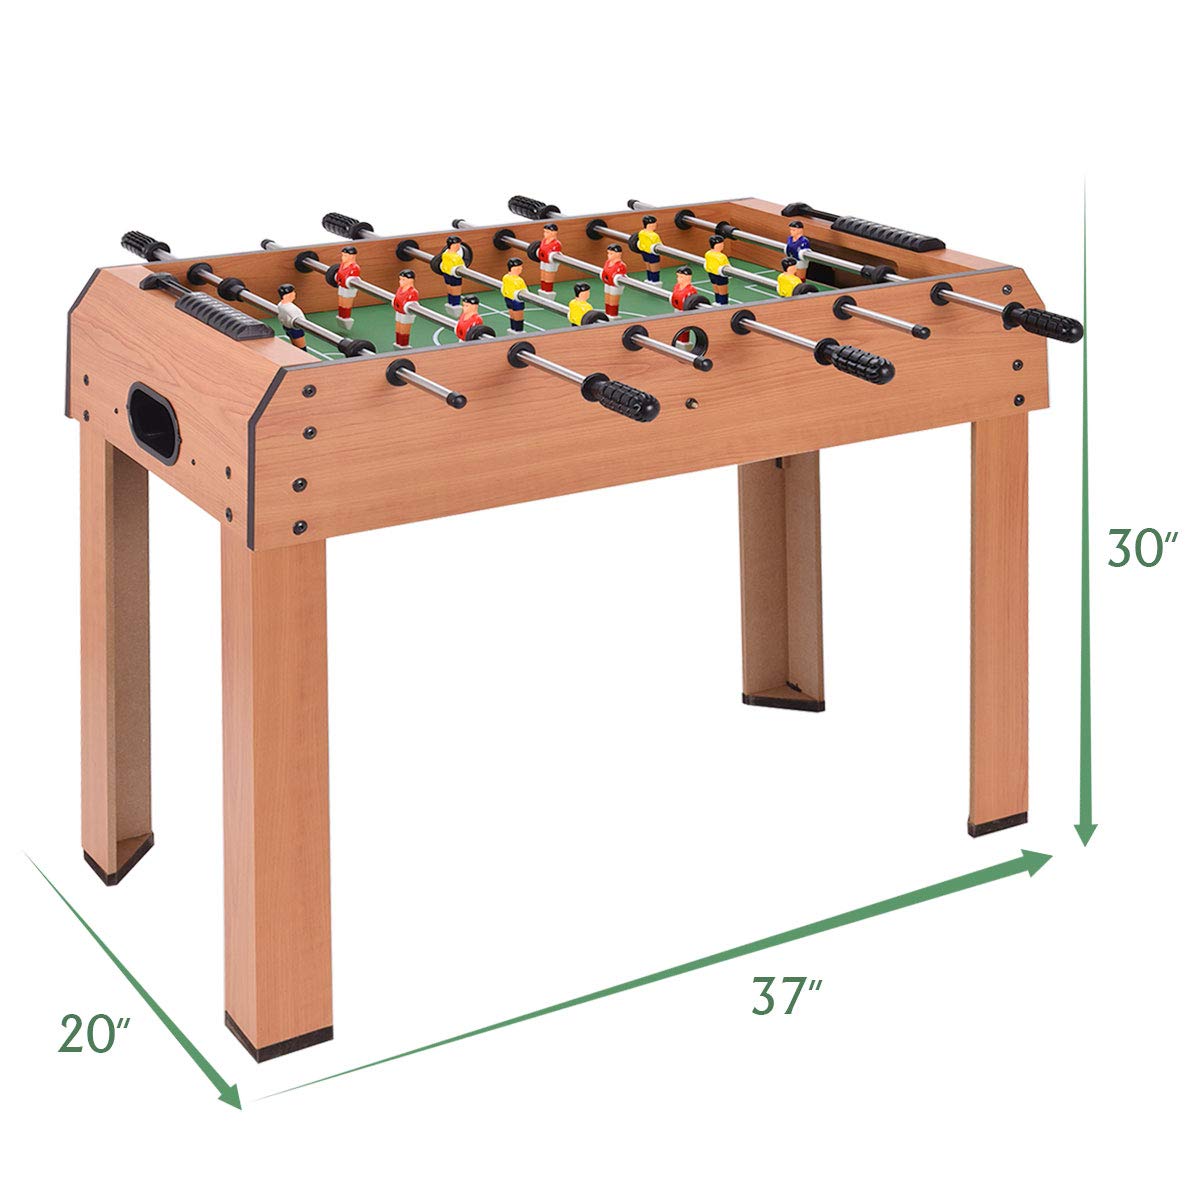 Giantex 37" Foosball Table